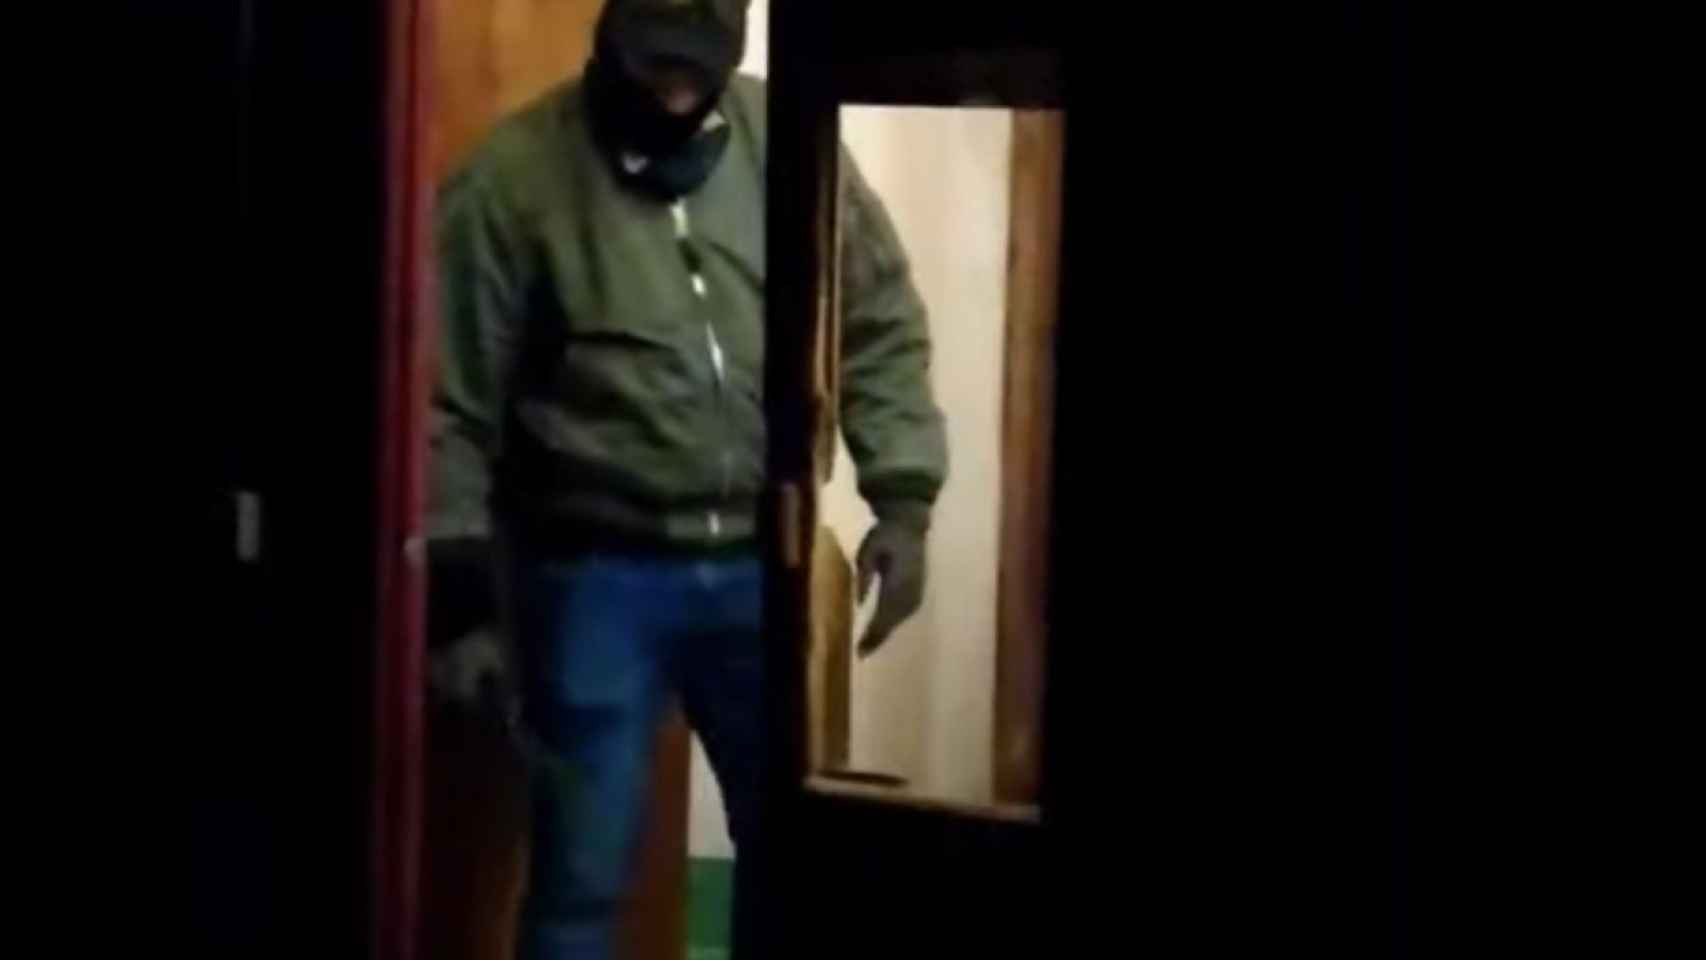 Captura del vídeo donde se ve a un agente golpeando a una persona / @teluobir